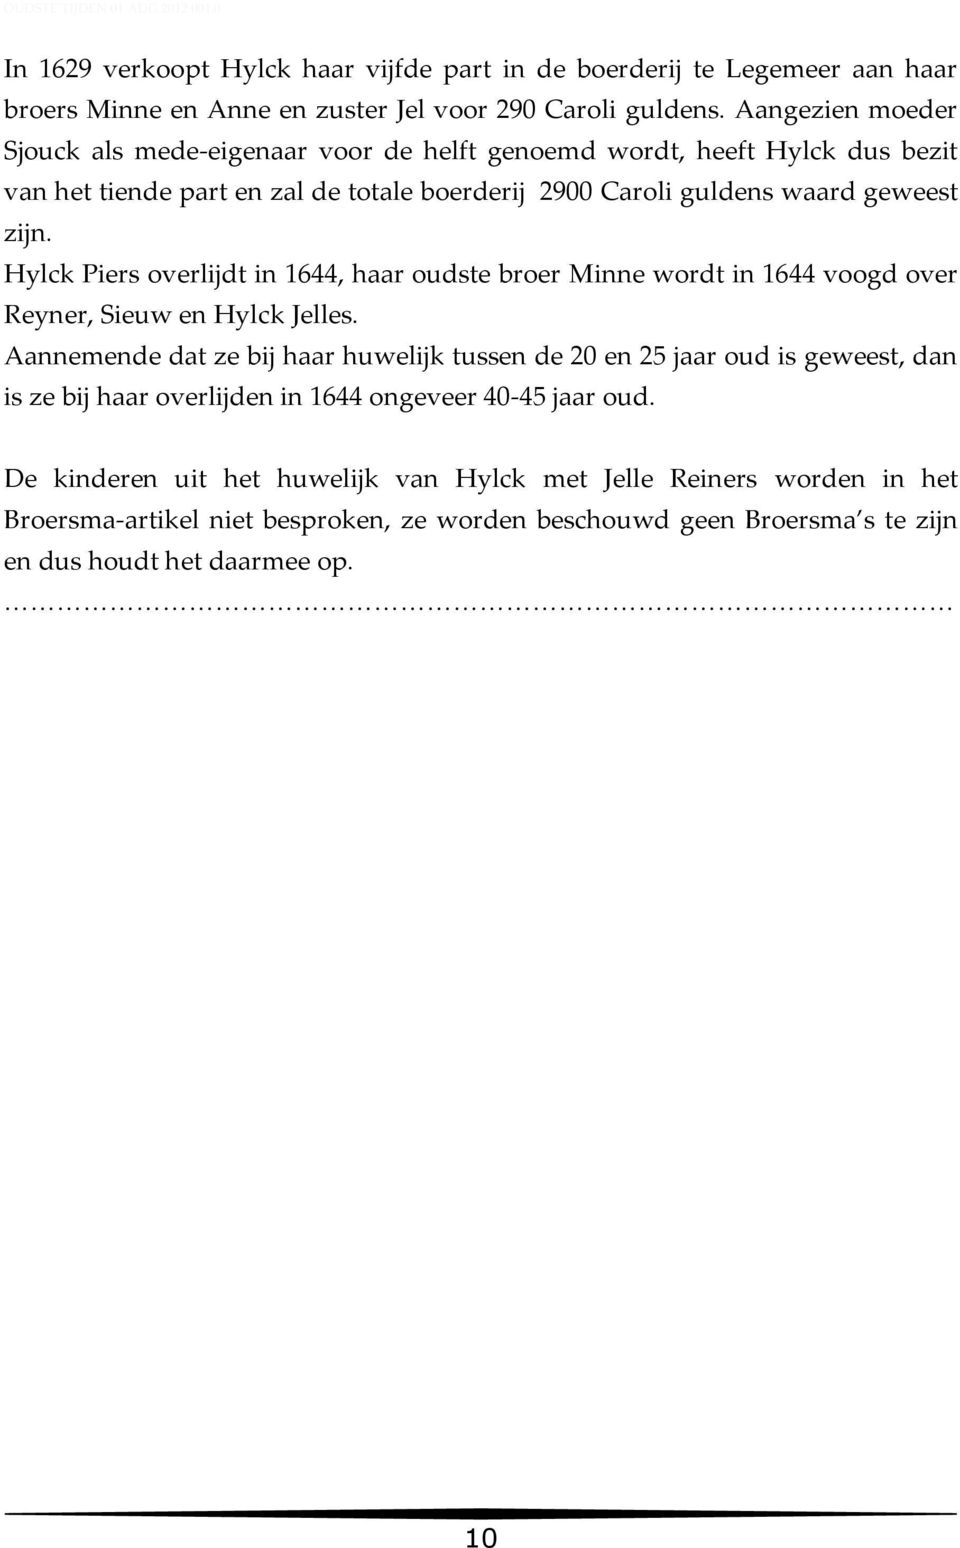 Hylck Piers overlijdt in 1644, haar oudste broer Minne wordt in 1644 voogd over Reyner, Sieuw en Hylck Jelles.